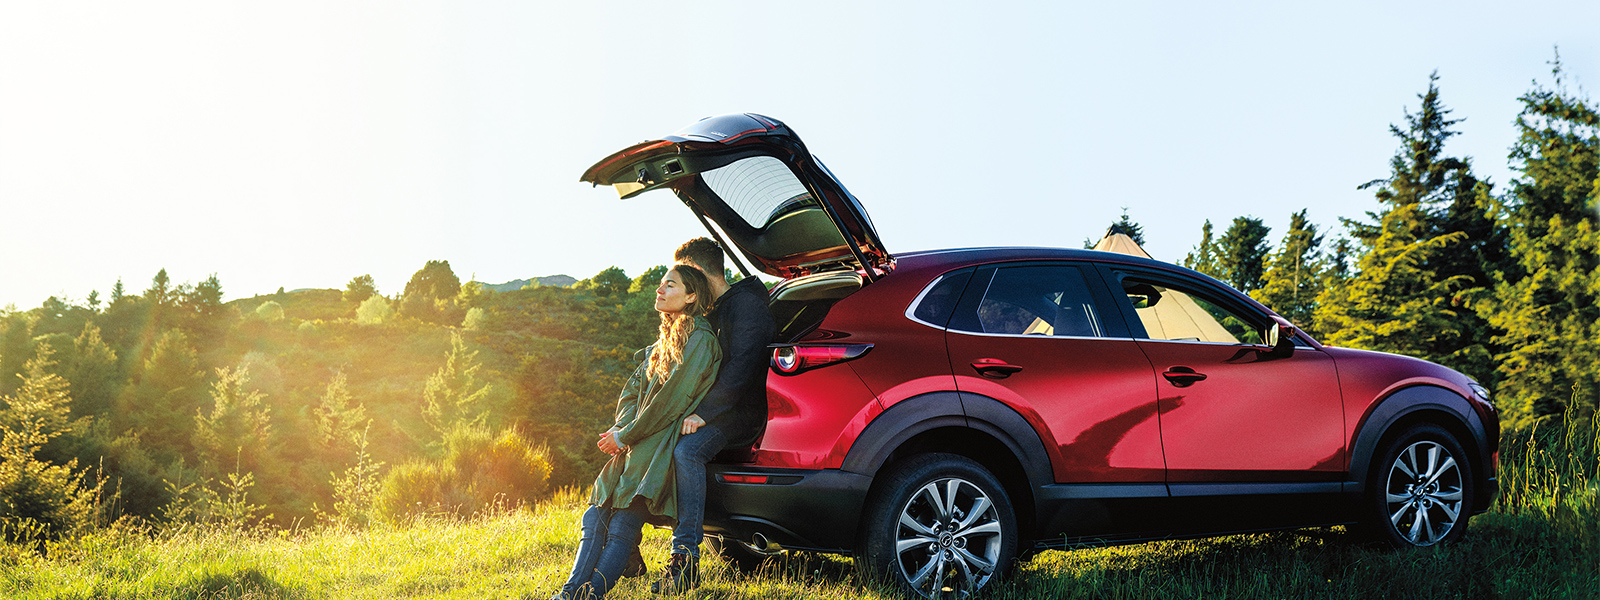 Jeune femme penchée vers un jeune homme assis à l’arrière d’un VUS Mazda rouge, le hayon ouvert, tous deux admirant la vue sur un paysage champêtre vallonné 